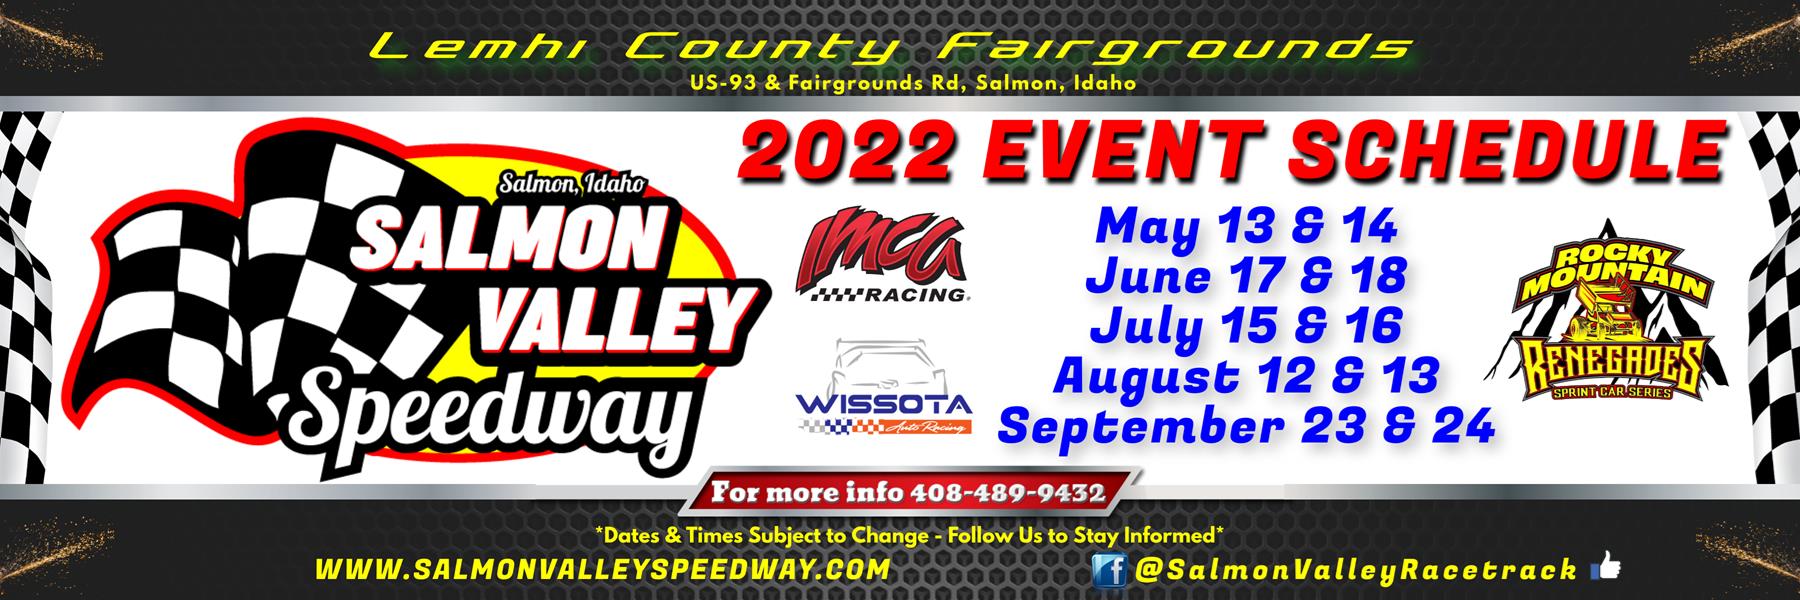 5/14/2022 - Salmon Valley Speedway